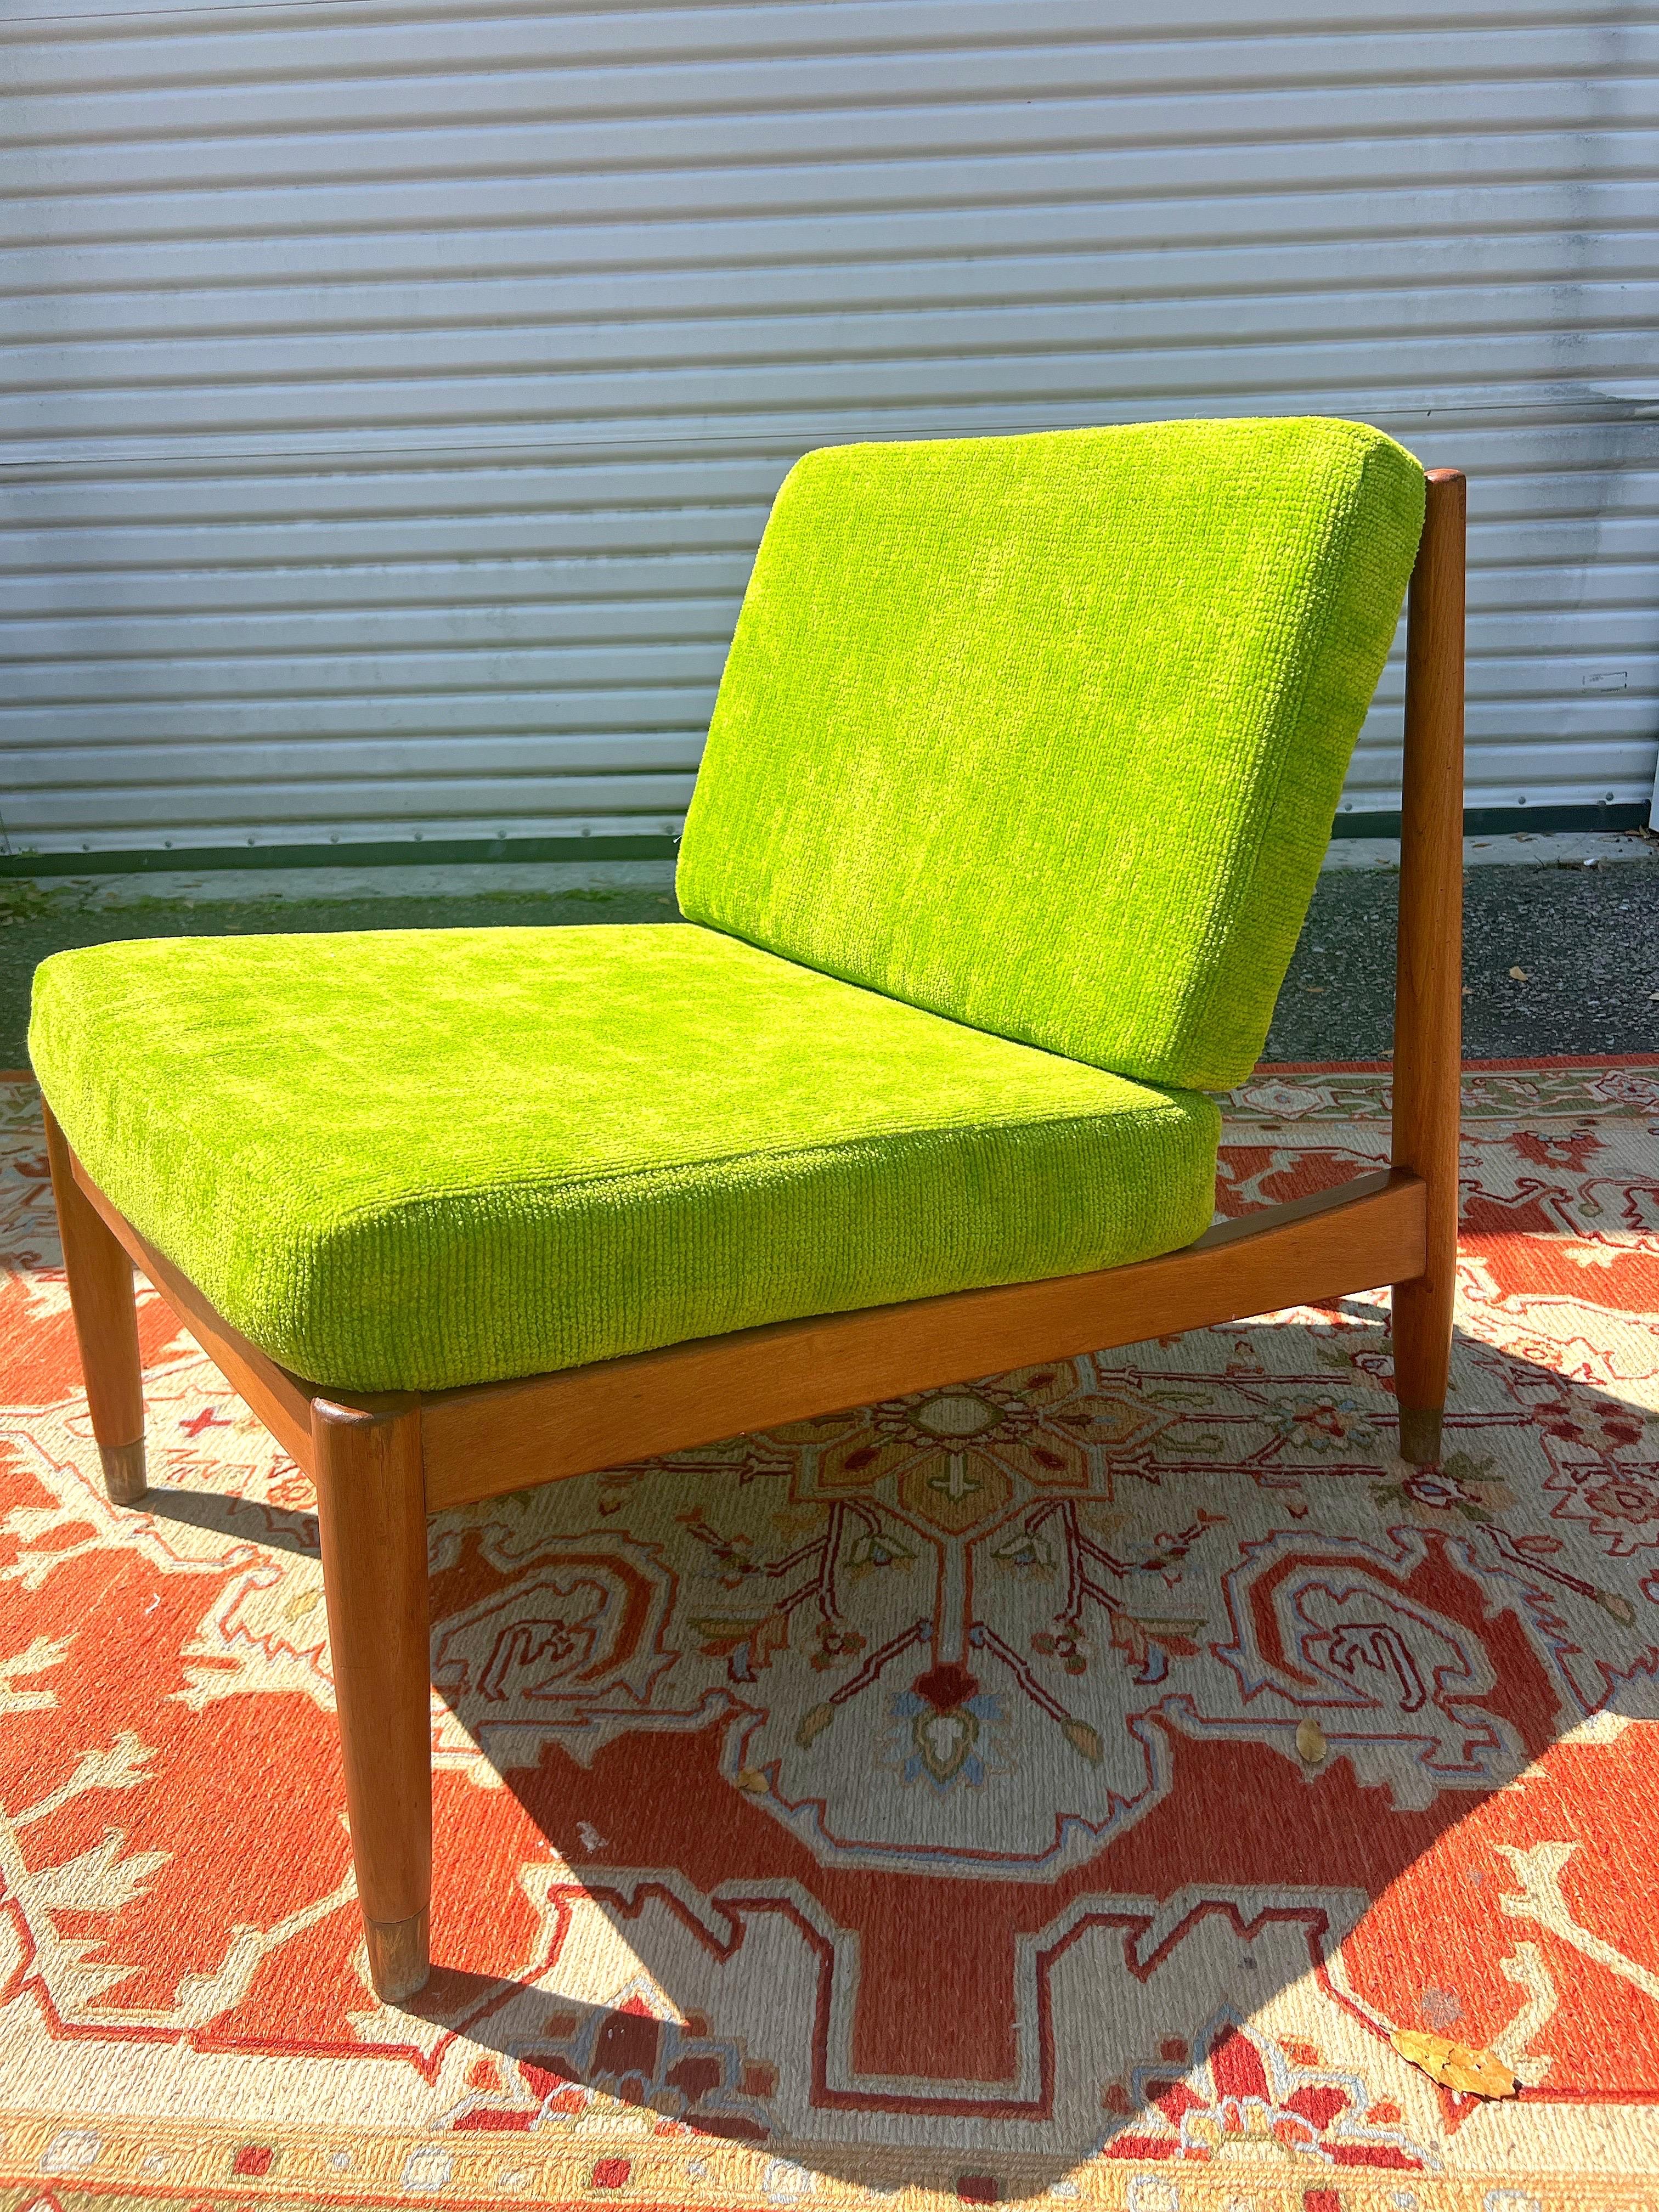 Pantoffelsessel von Folke Ohlsson, hergestellt für dux in Schweden, ca. 1950er Jahre. Dieser dänische moderne Loungesessel
 Wird aus hochwertigem Nussbaumholz hergestellt. Der Stuhl hat einen Rahmen aus Walnussholz mit fünf vertikalen Latten in der